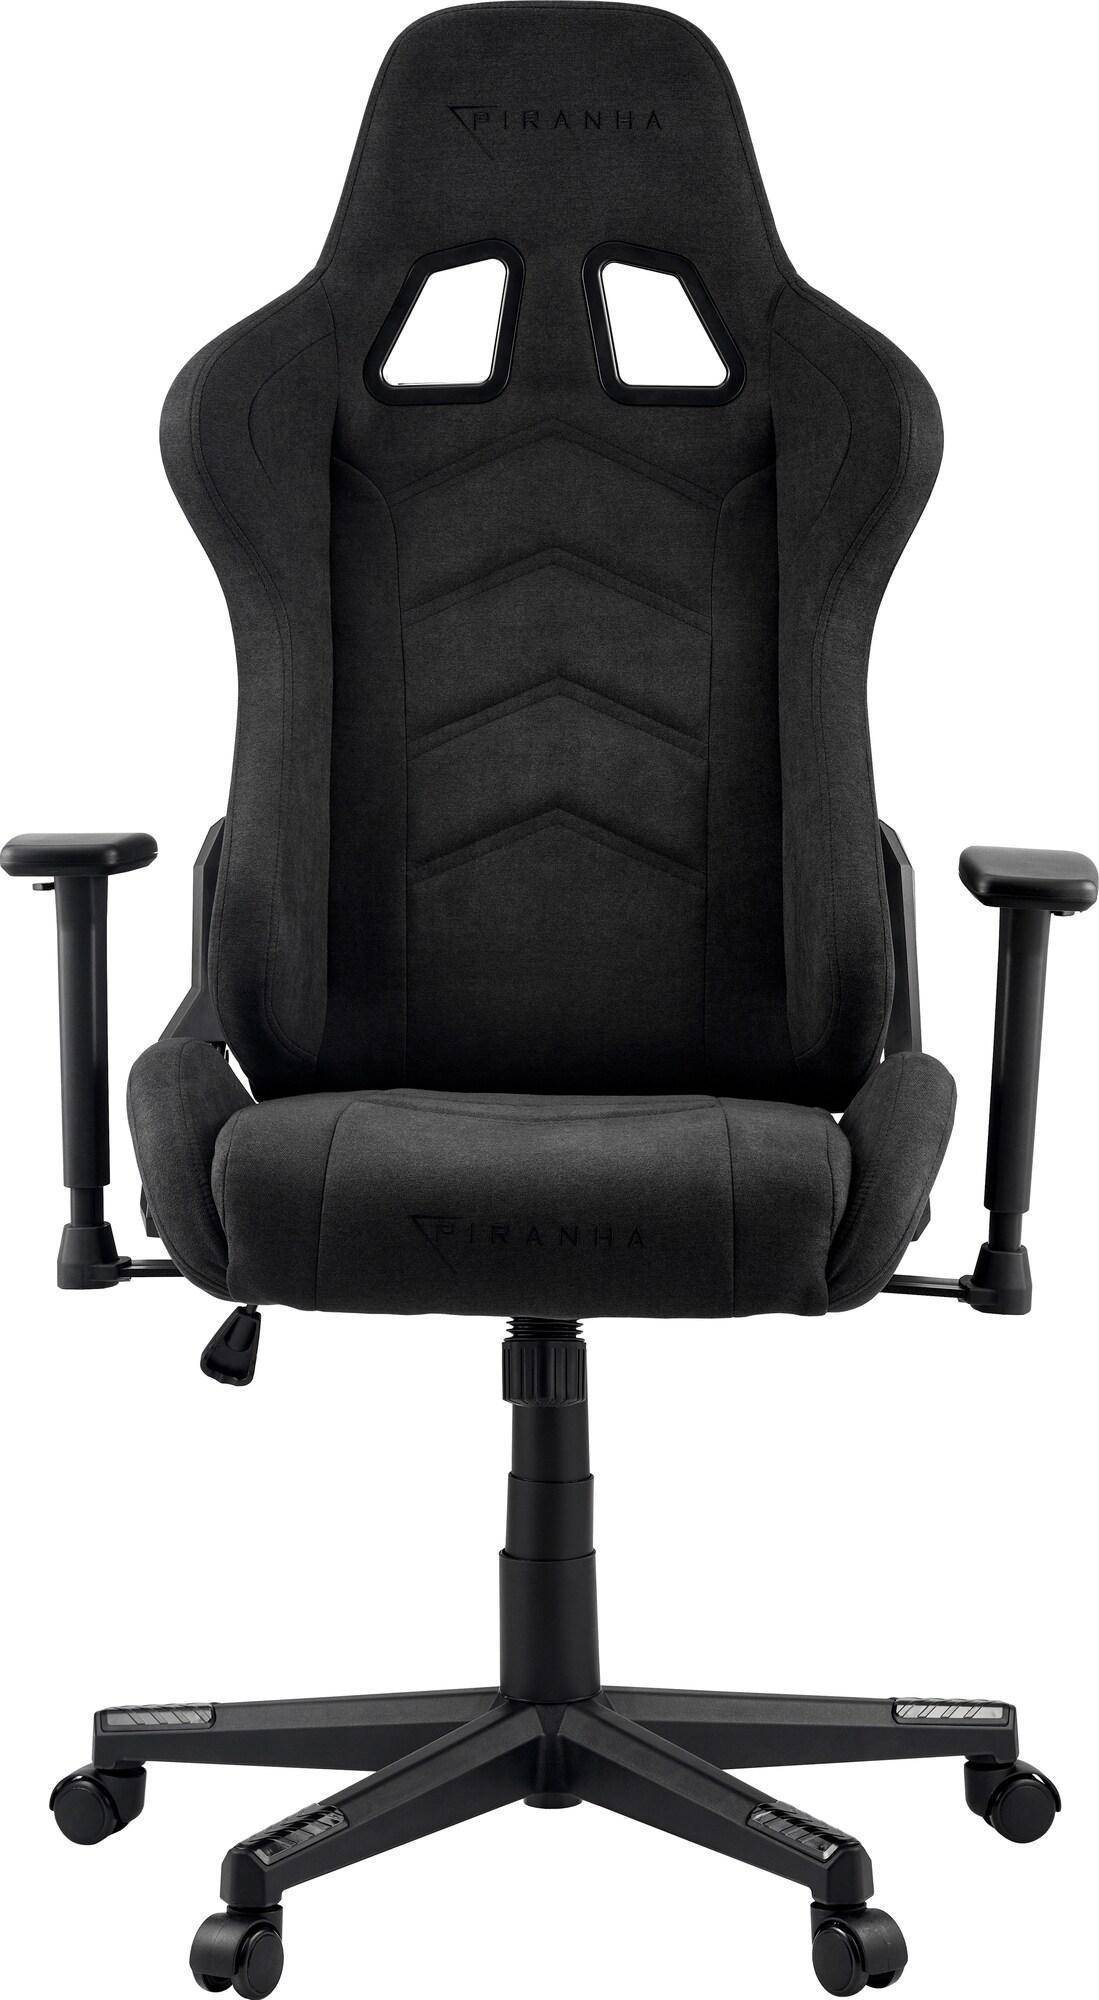  Bild på Piranha Attack V2 Gaming Chair - Cloth Edition - Dark Grey gamingstol